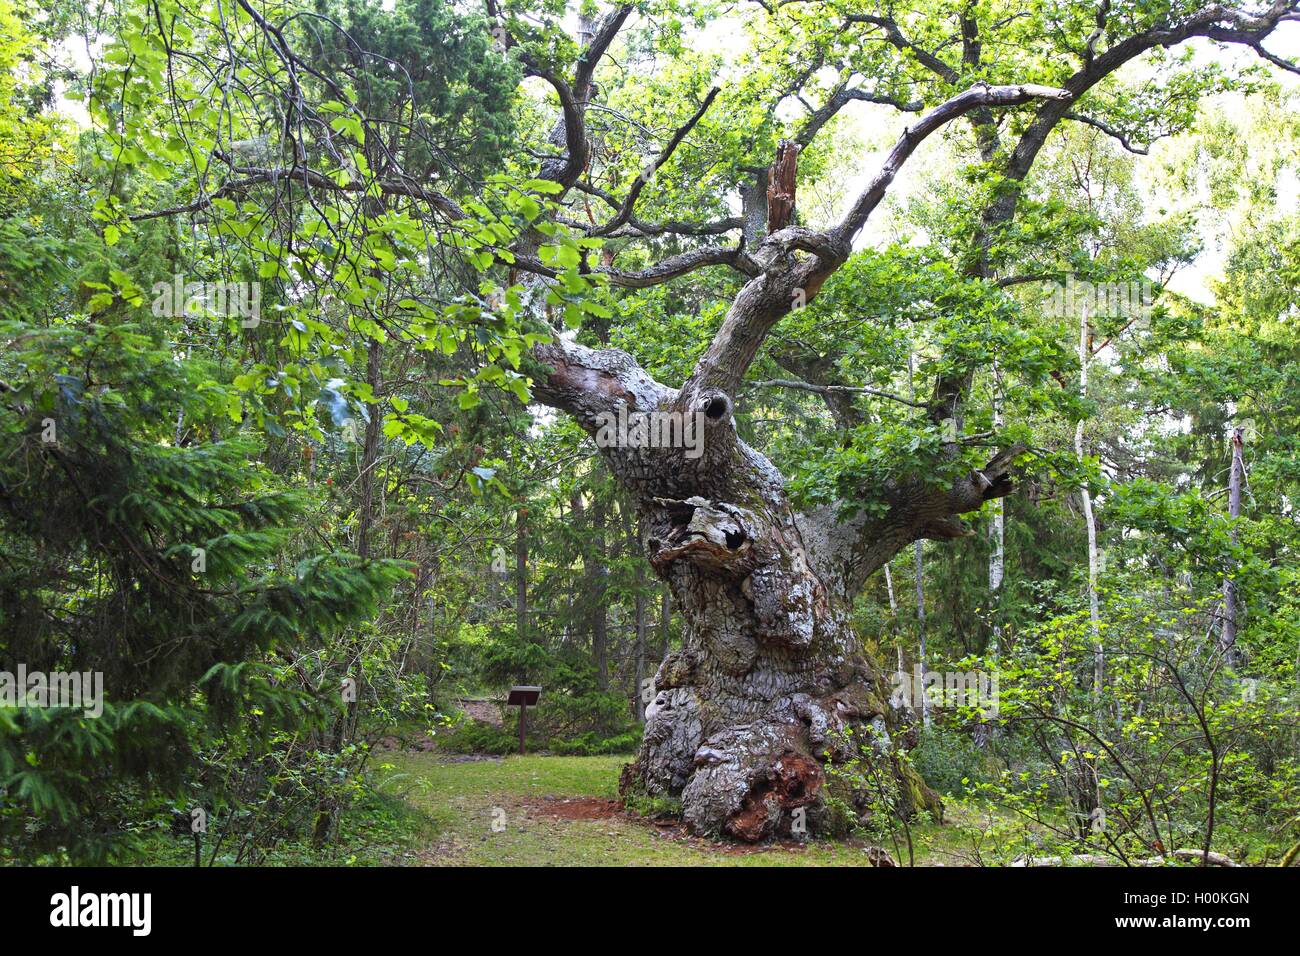 Le chêne commun, le chêne pédonculé, chêne pédonculé (Quercus robur), 1000 ans de chêne ancien, la Suède, l'Oeland, Trollskogen Wald Banque D'Images